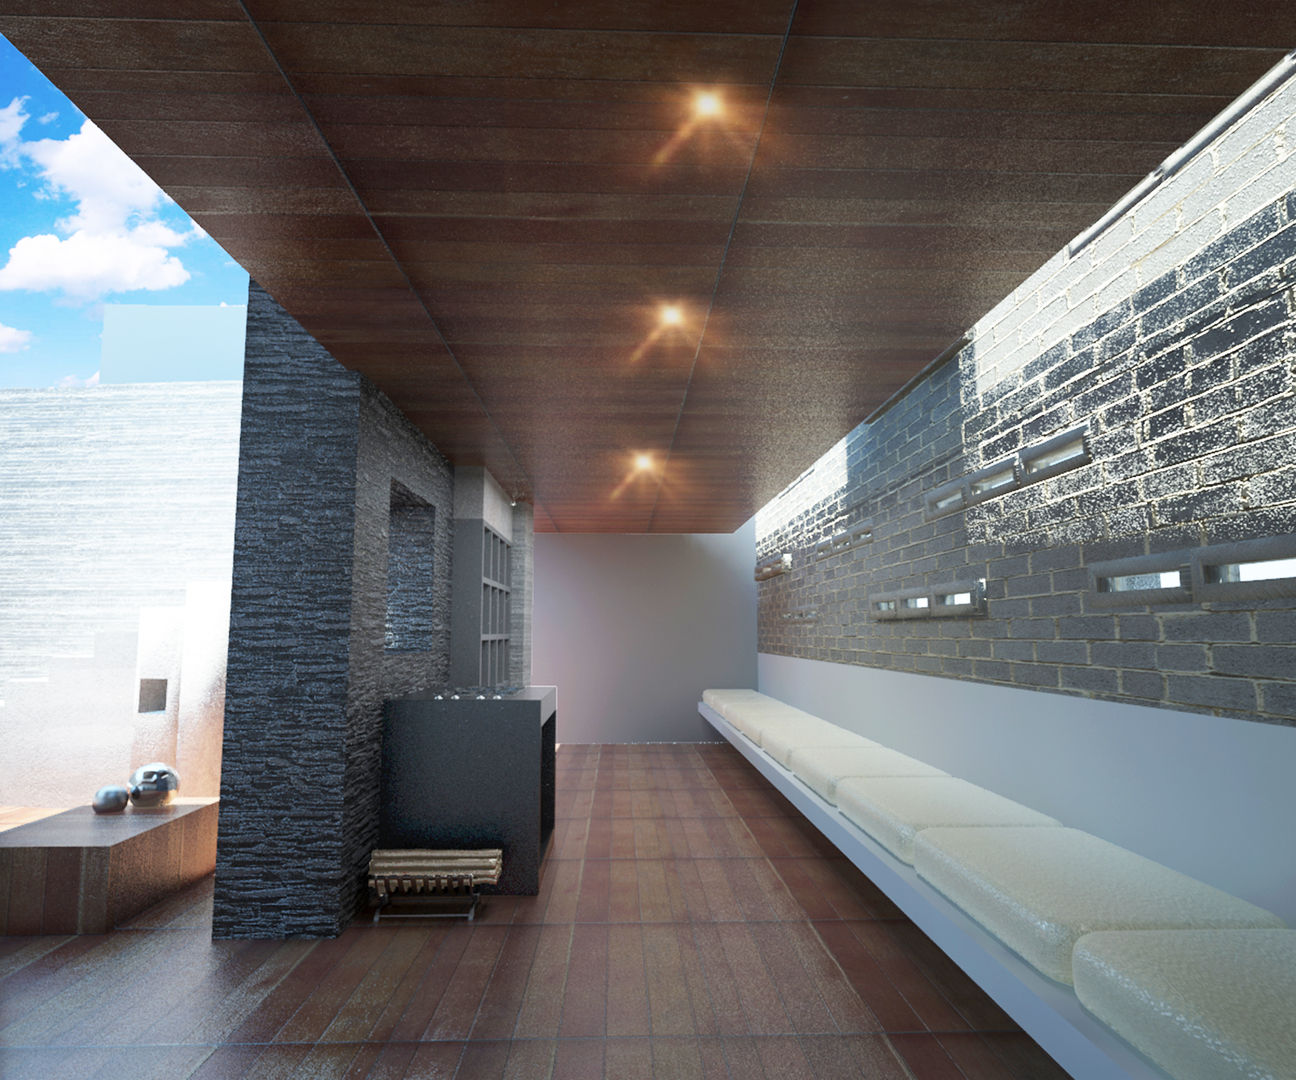 DISEÑO DE INTERIORES - ROOF GARDEN -, Prototype studio Prototype studio Moderne balkons, veranda's en terrassen